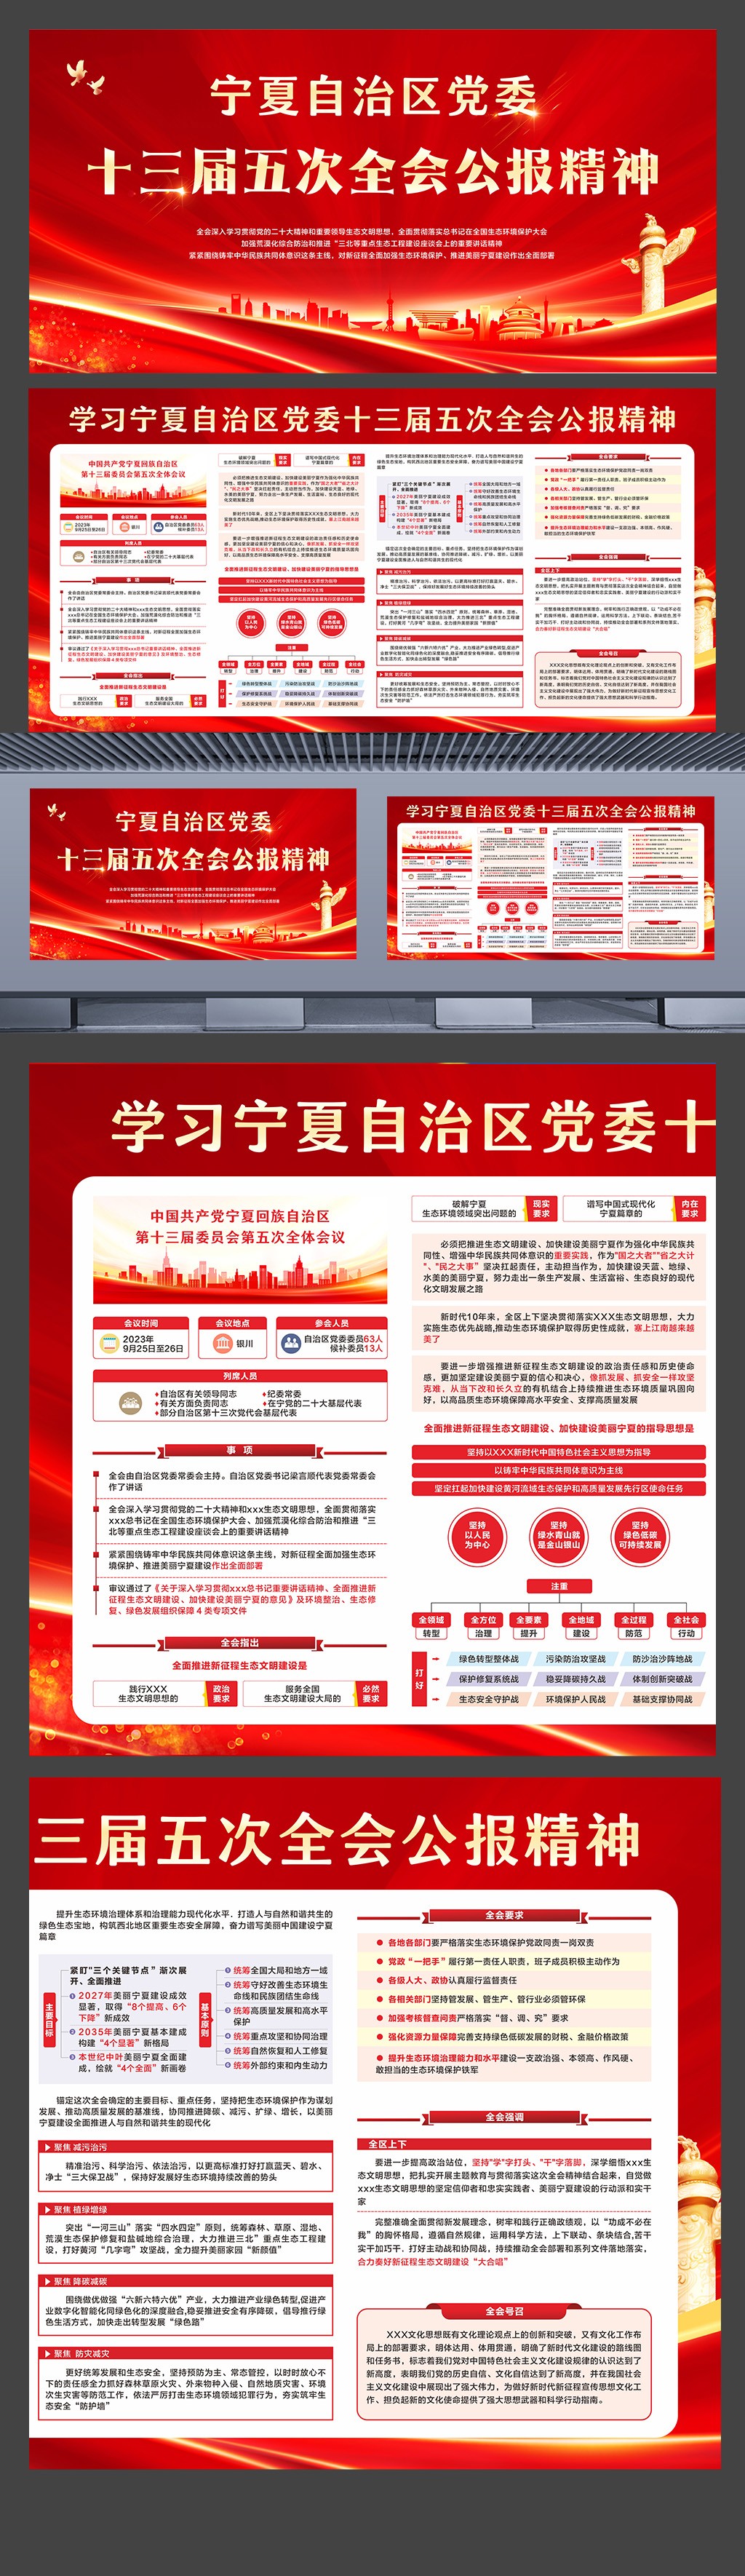 学习宁夏自治区党委十三届五次全会公报精神展板设计